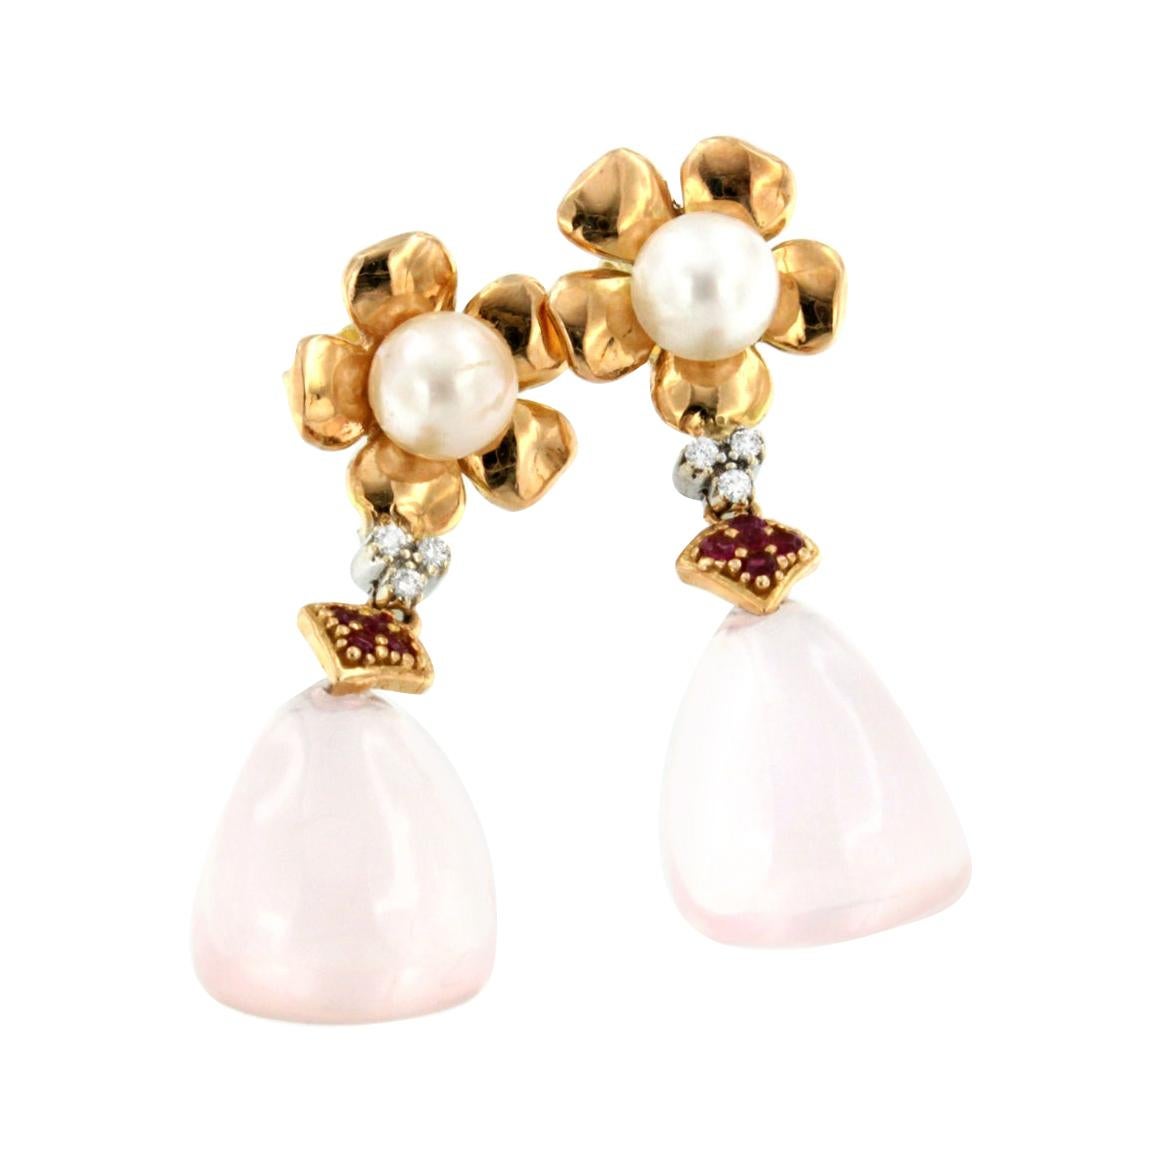 Boucles d'oreilles en or rose et blanc 18 carats avec perles de quartz rose, rubis et diamants blancs